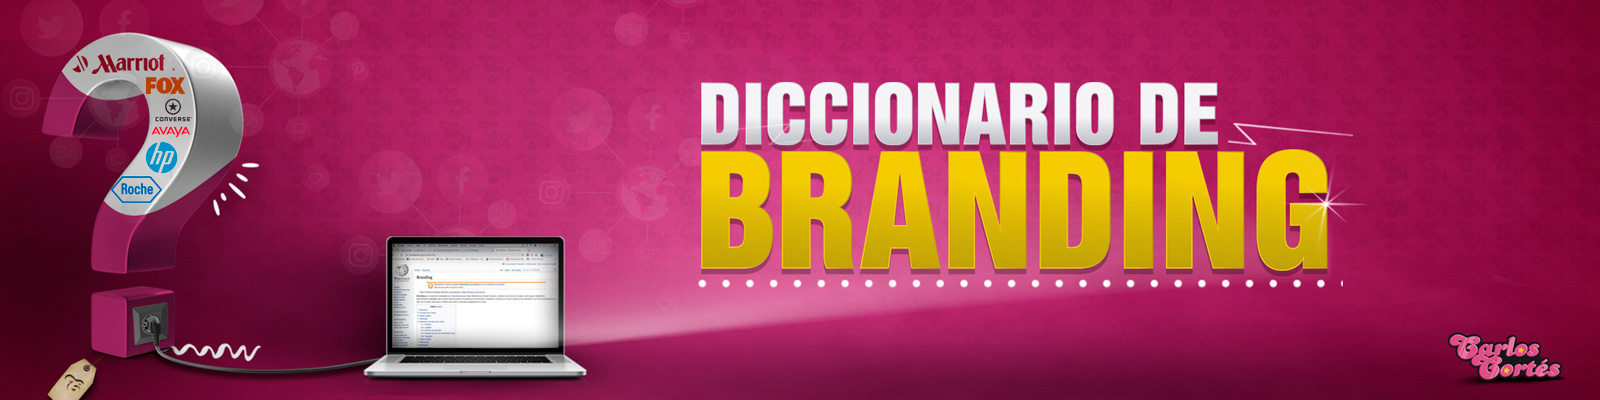 Diccionario de Branding de Carlos Cortés